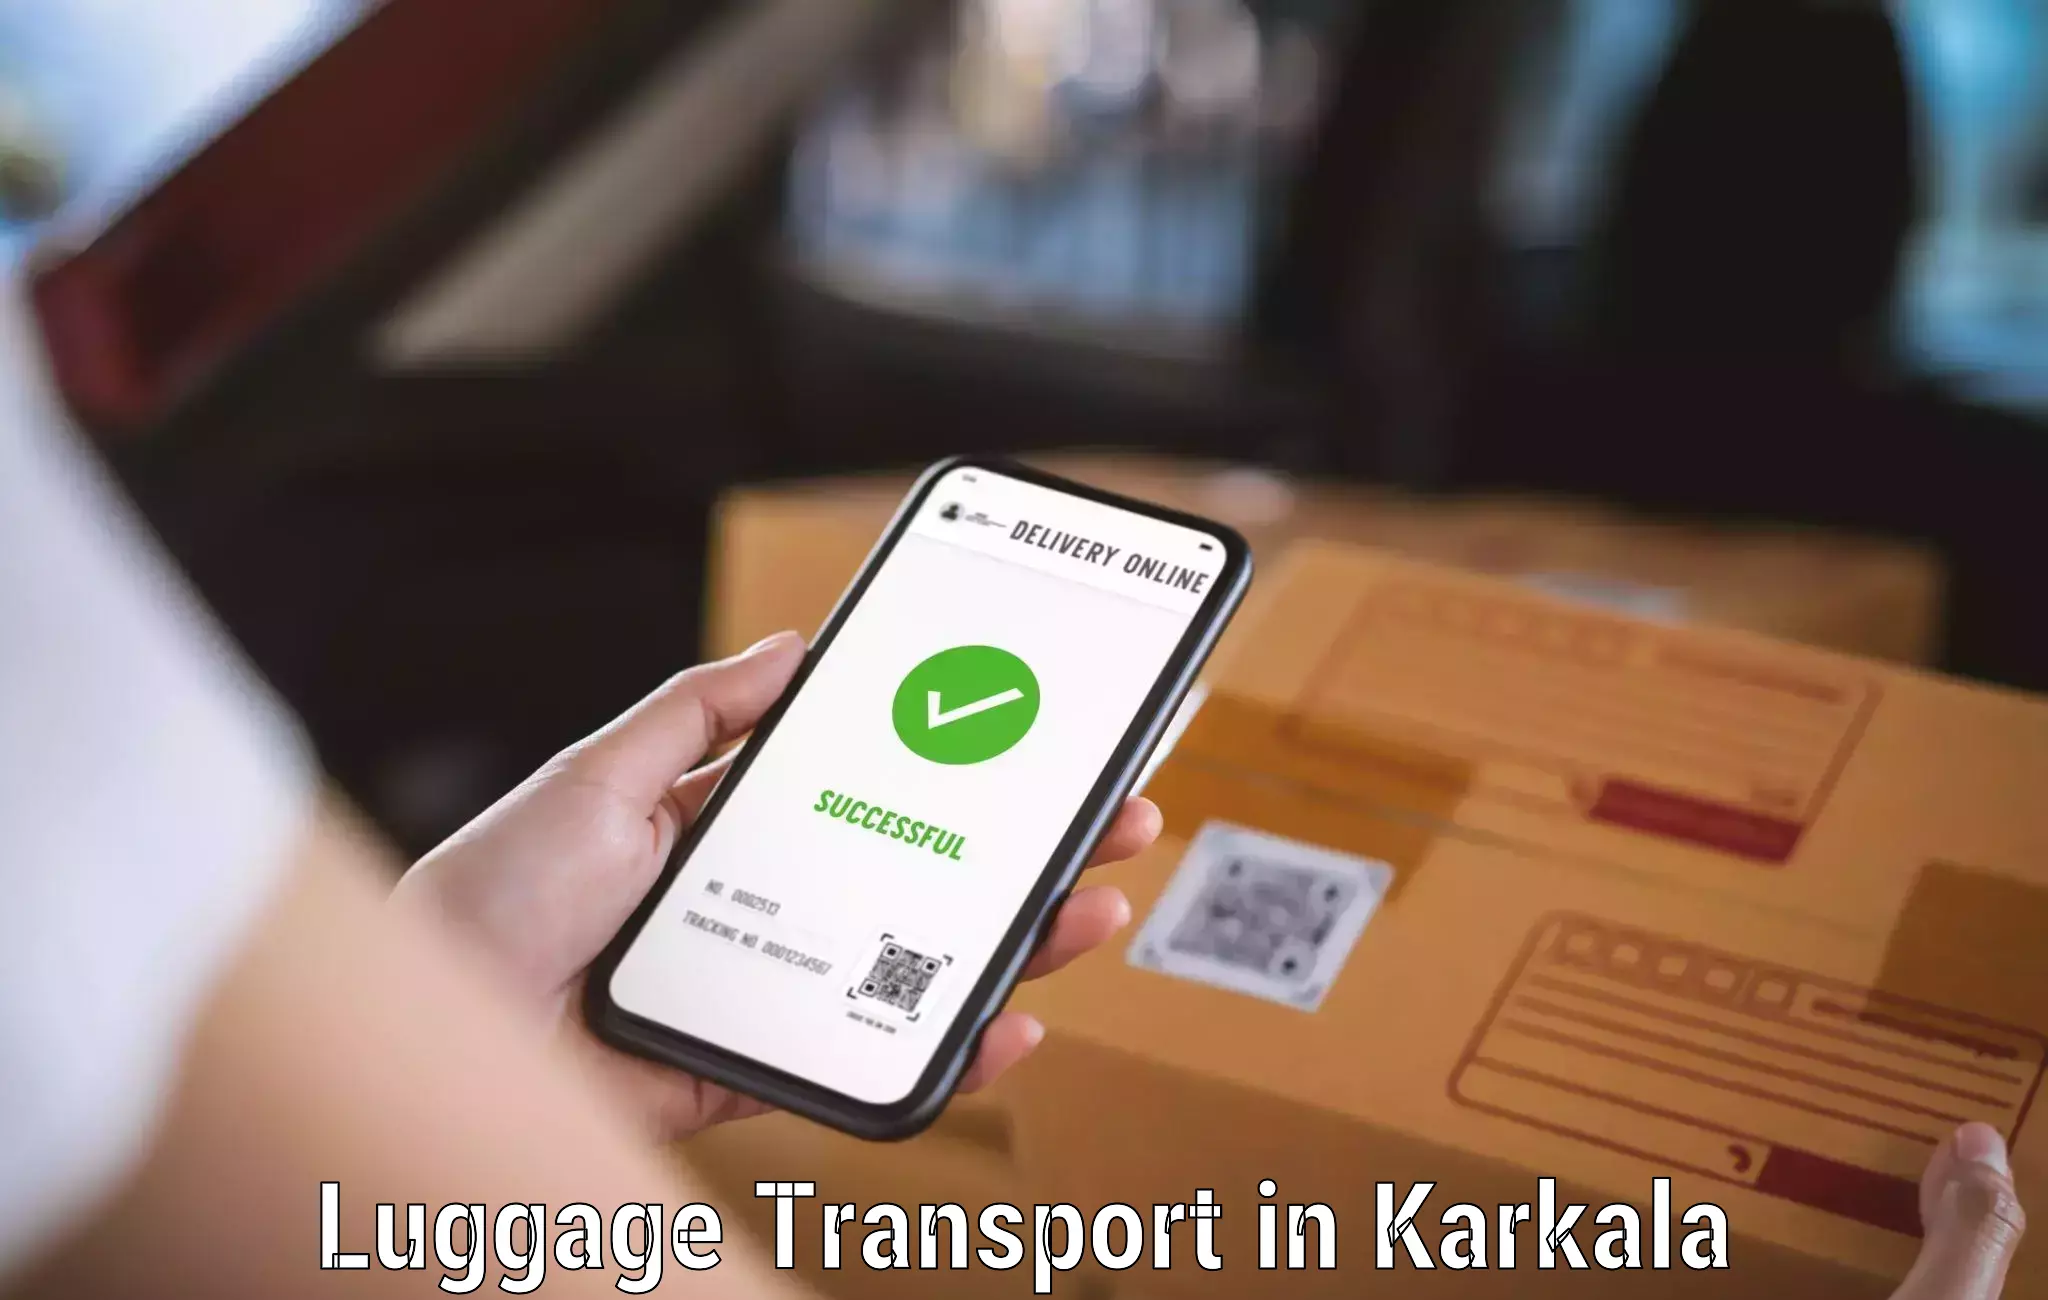 Baggage transport technology in Karkala